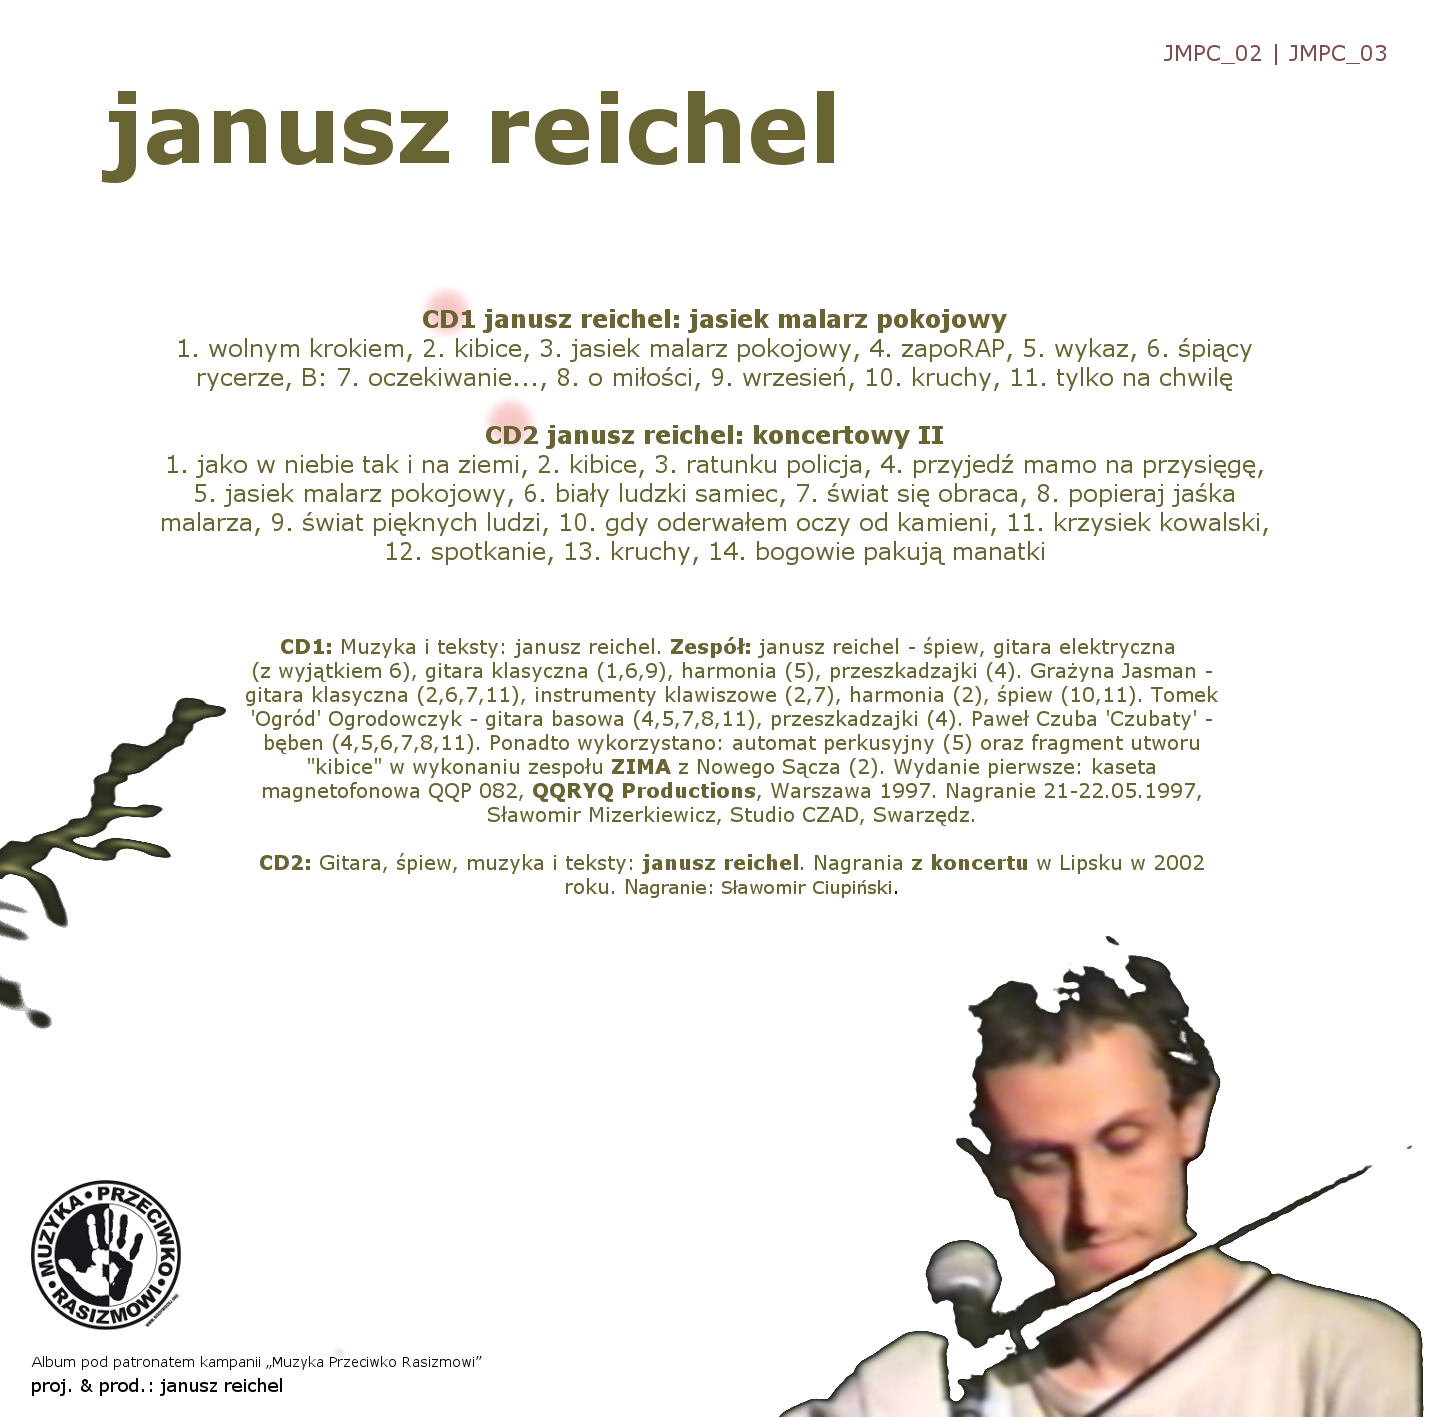 CYFROWE WYDANIE ALBUMU JANUSZA REICHELA „JASIEK MALARZ POKOJOWY / KONCERTOWY 2”